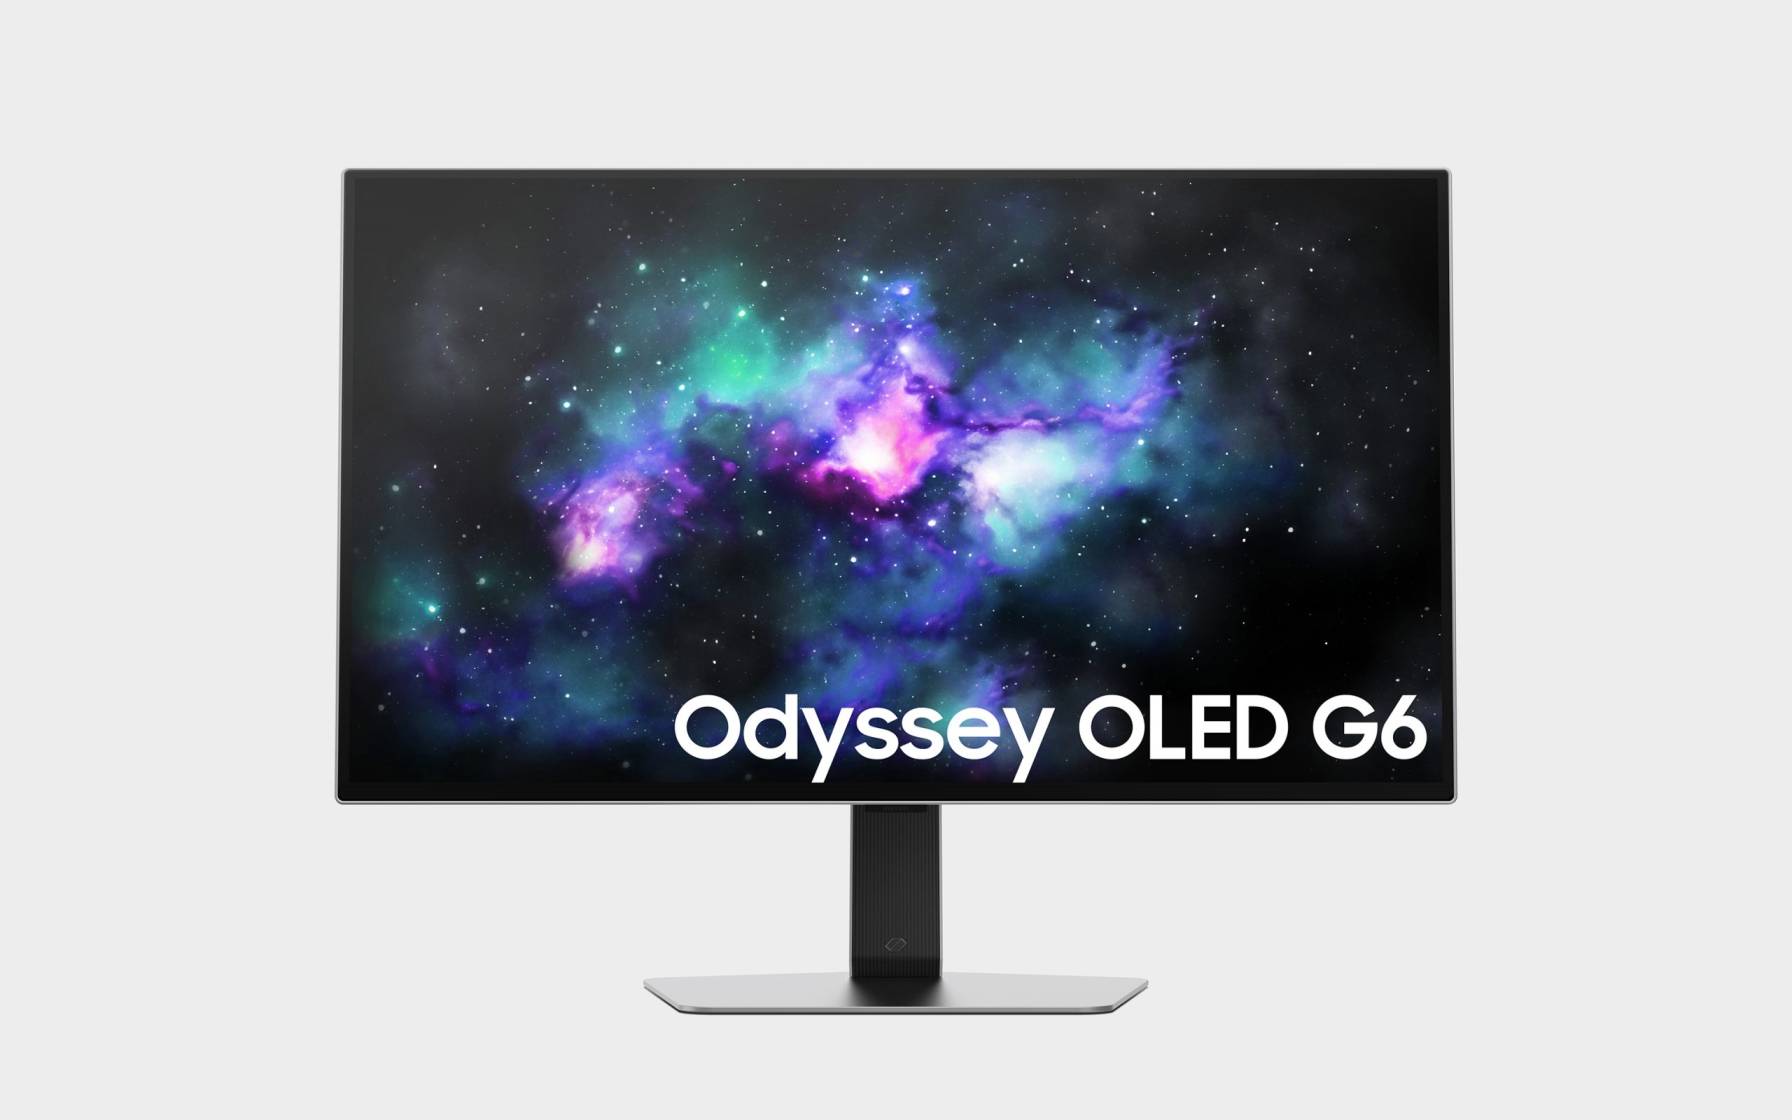 Odyssey OLED G6